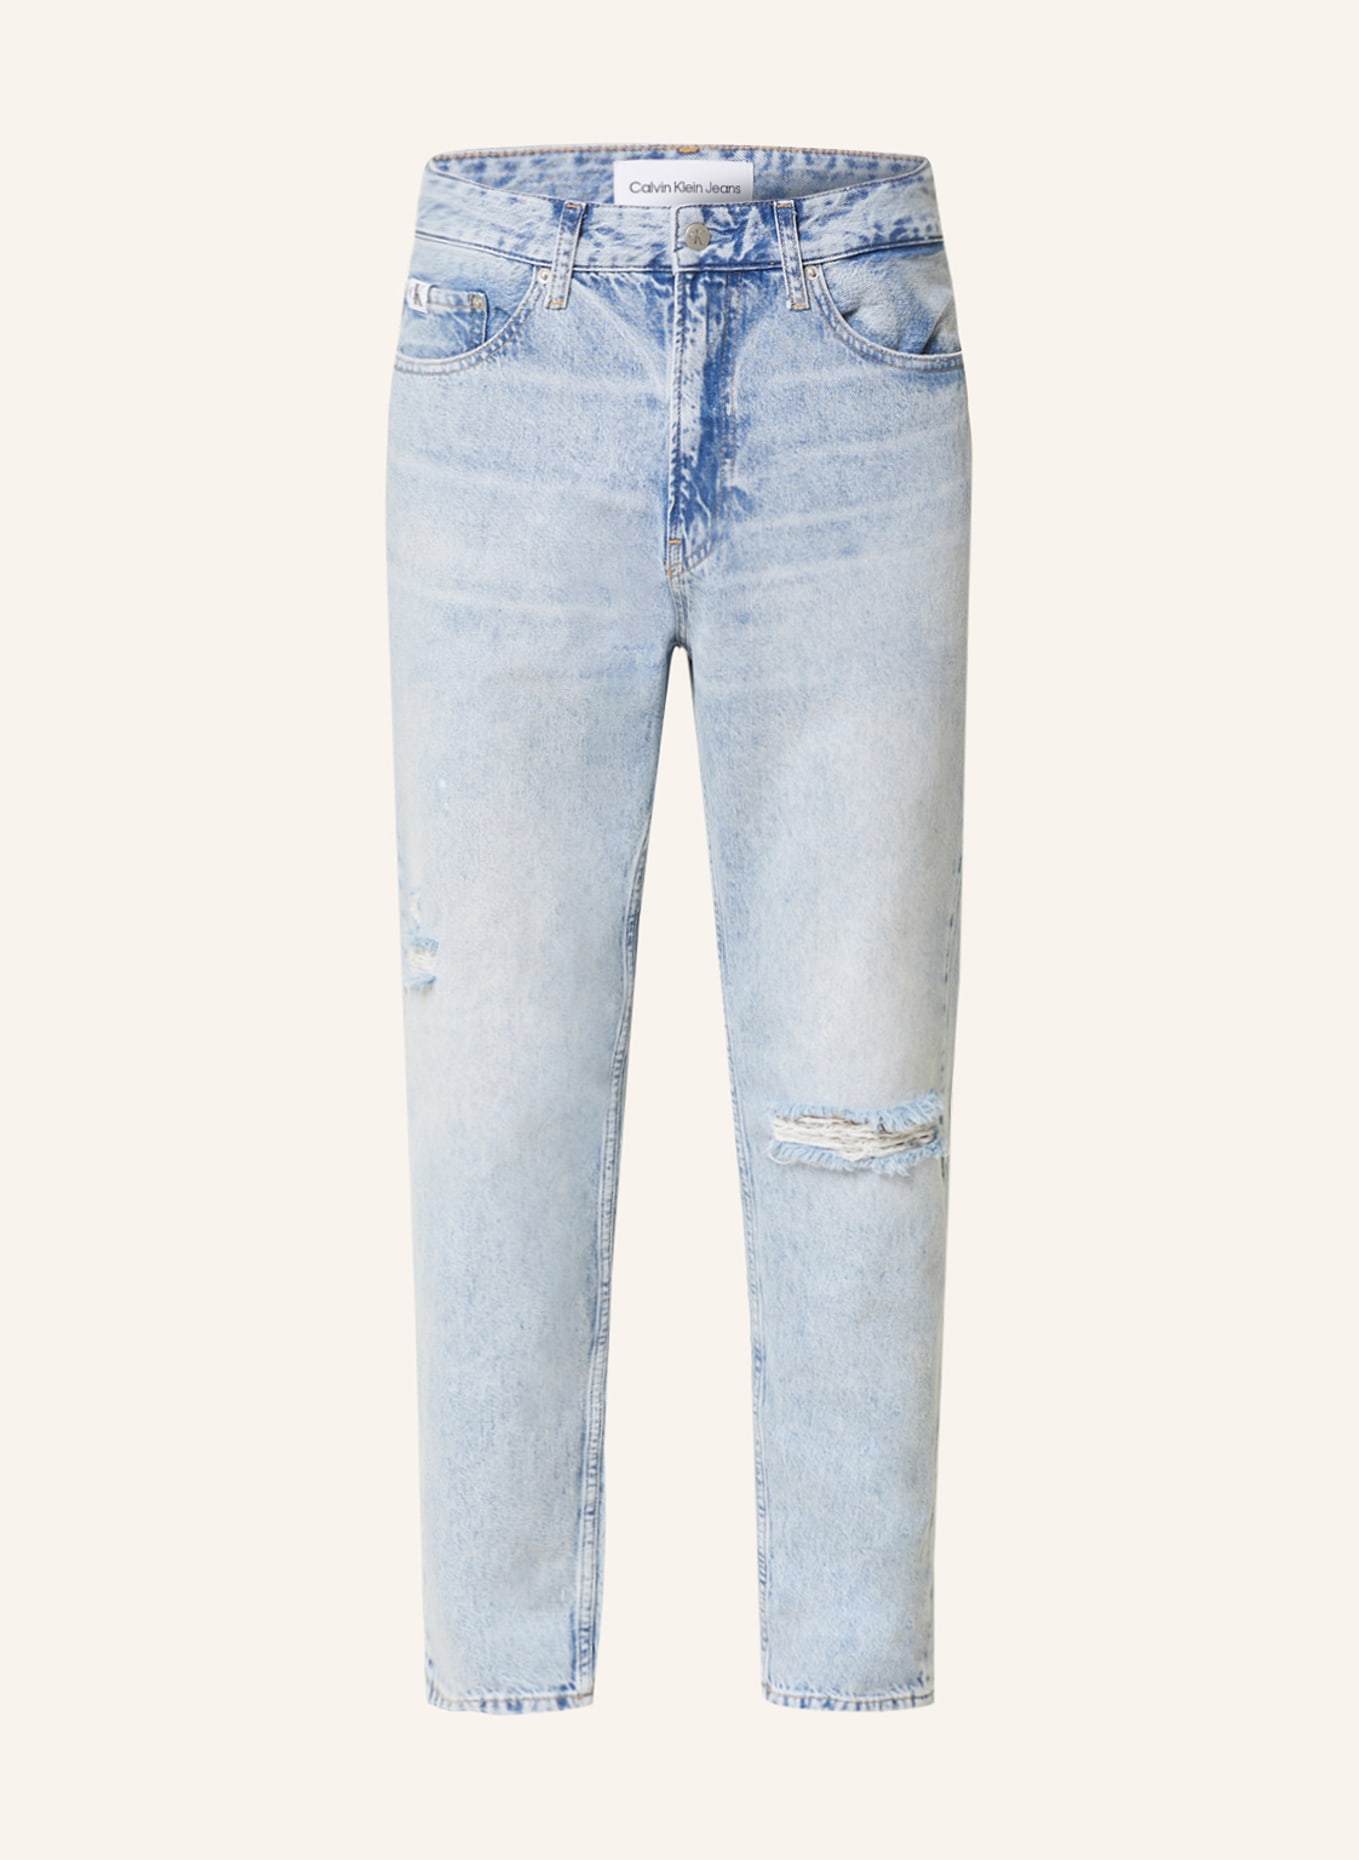 Calvin Klein Jeans Destroyed jeans regular taper fit, Color: 1A4 DENIM MEDIUM (Image 1)